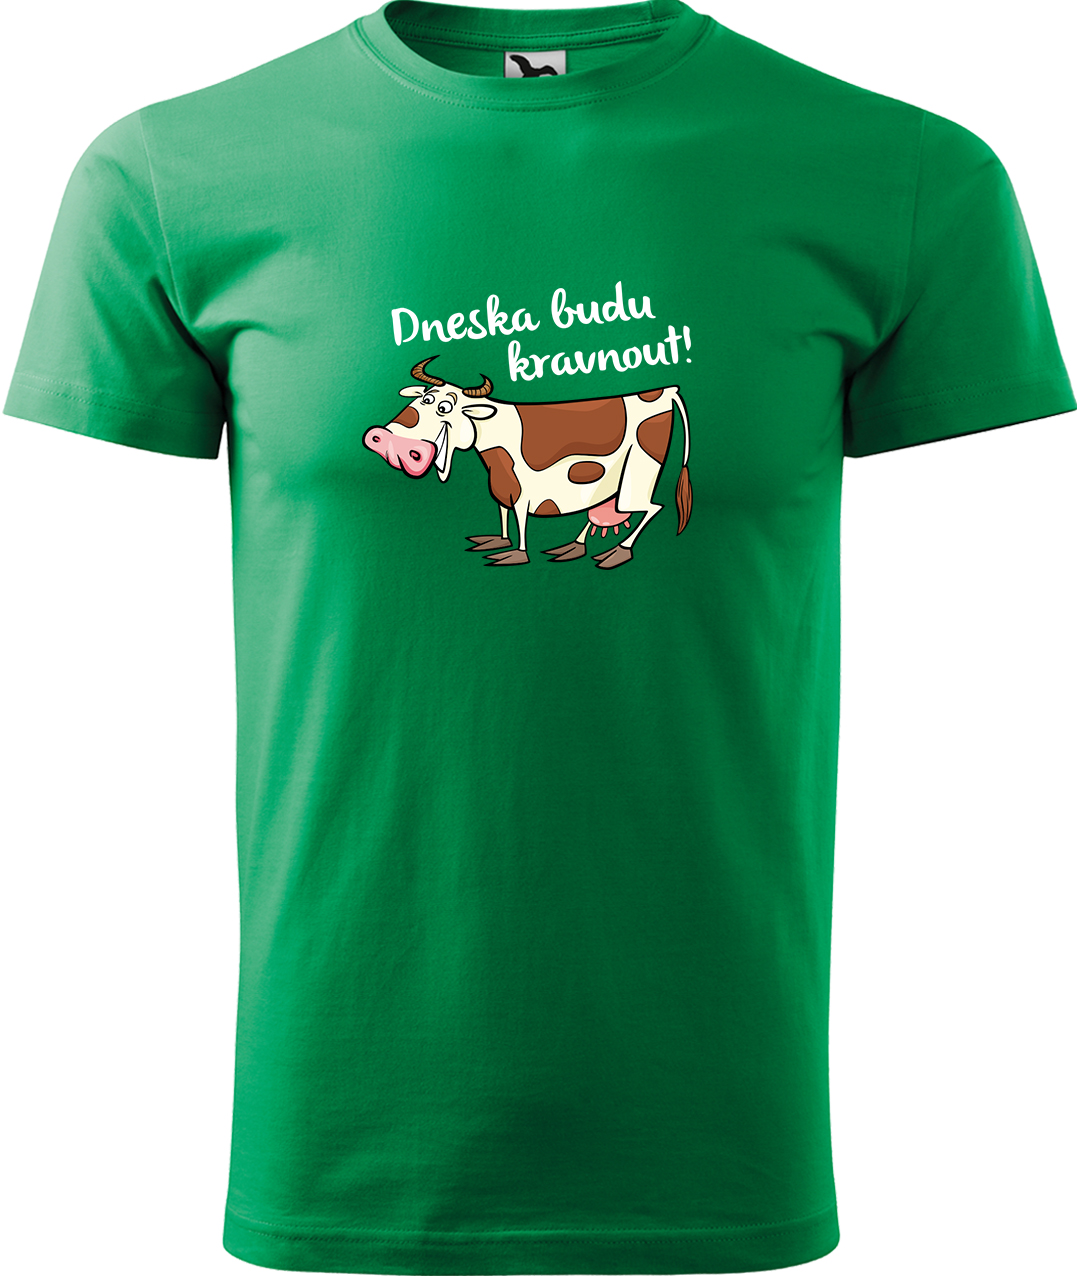 Pánské tričko s krávou - Dneska budu kravnout! Velikost: 3XL, Barva: Středně zelená (16), Střih: pánský